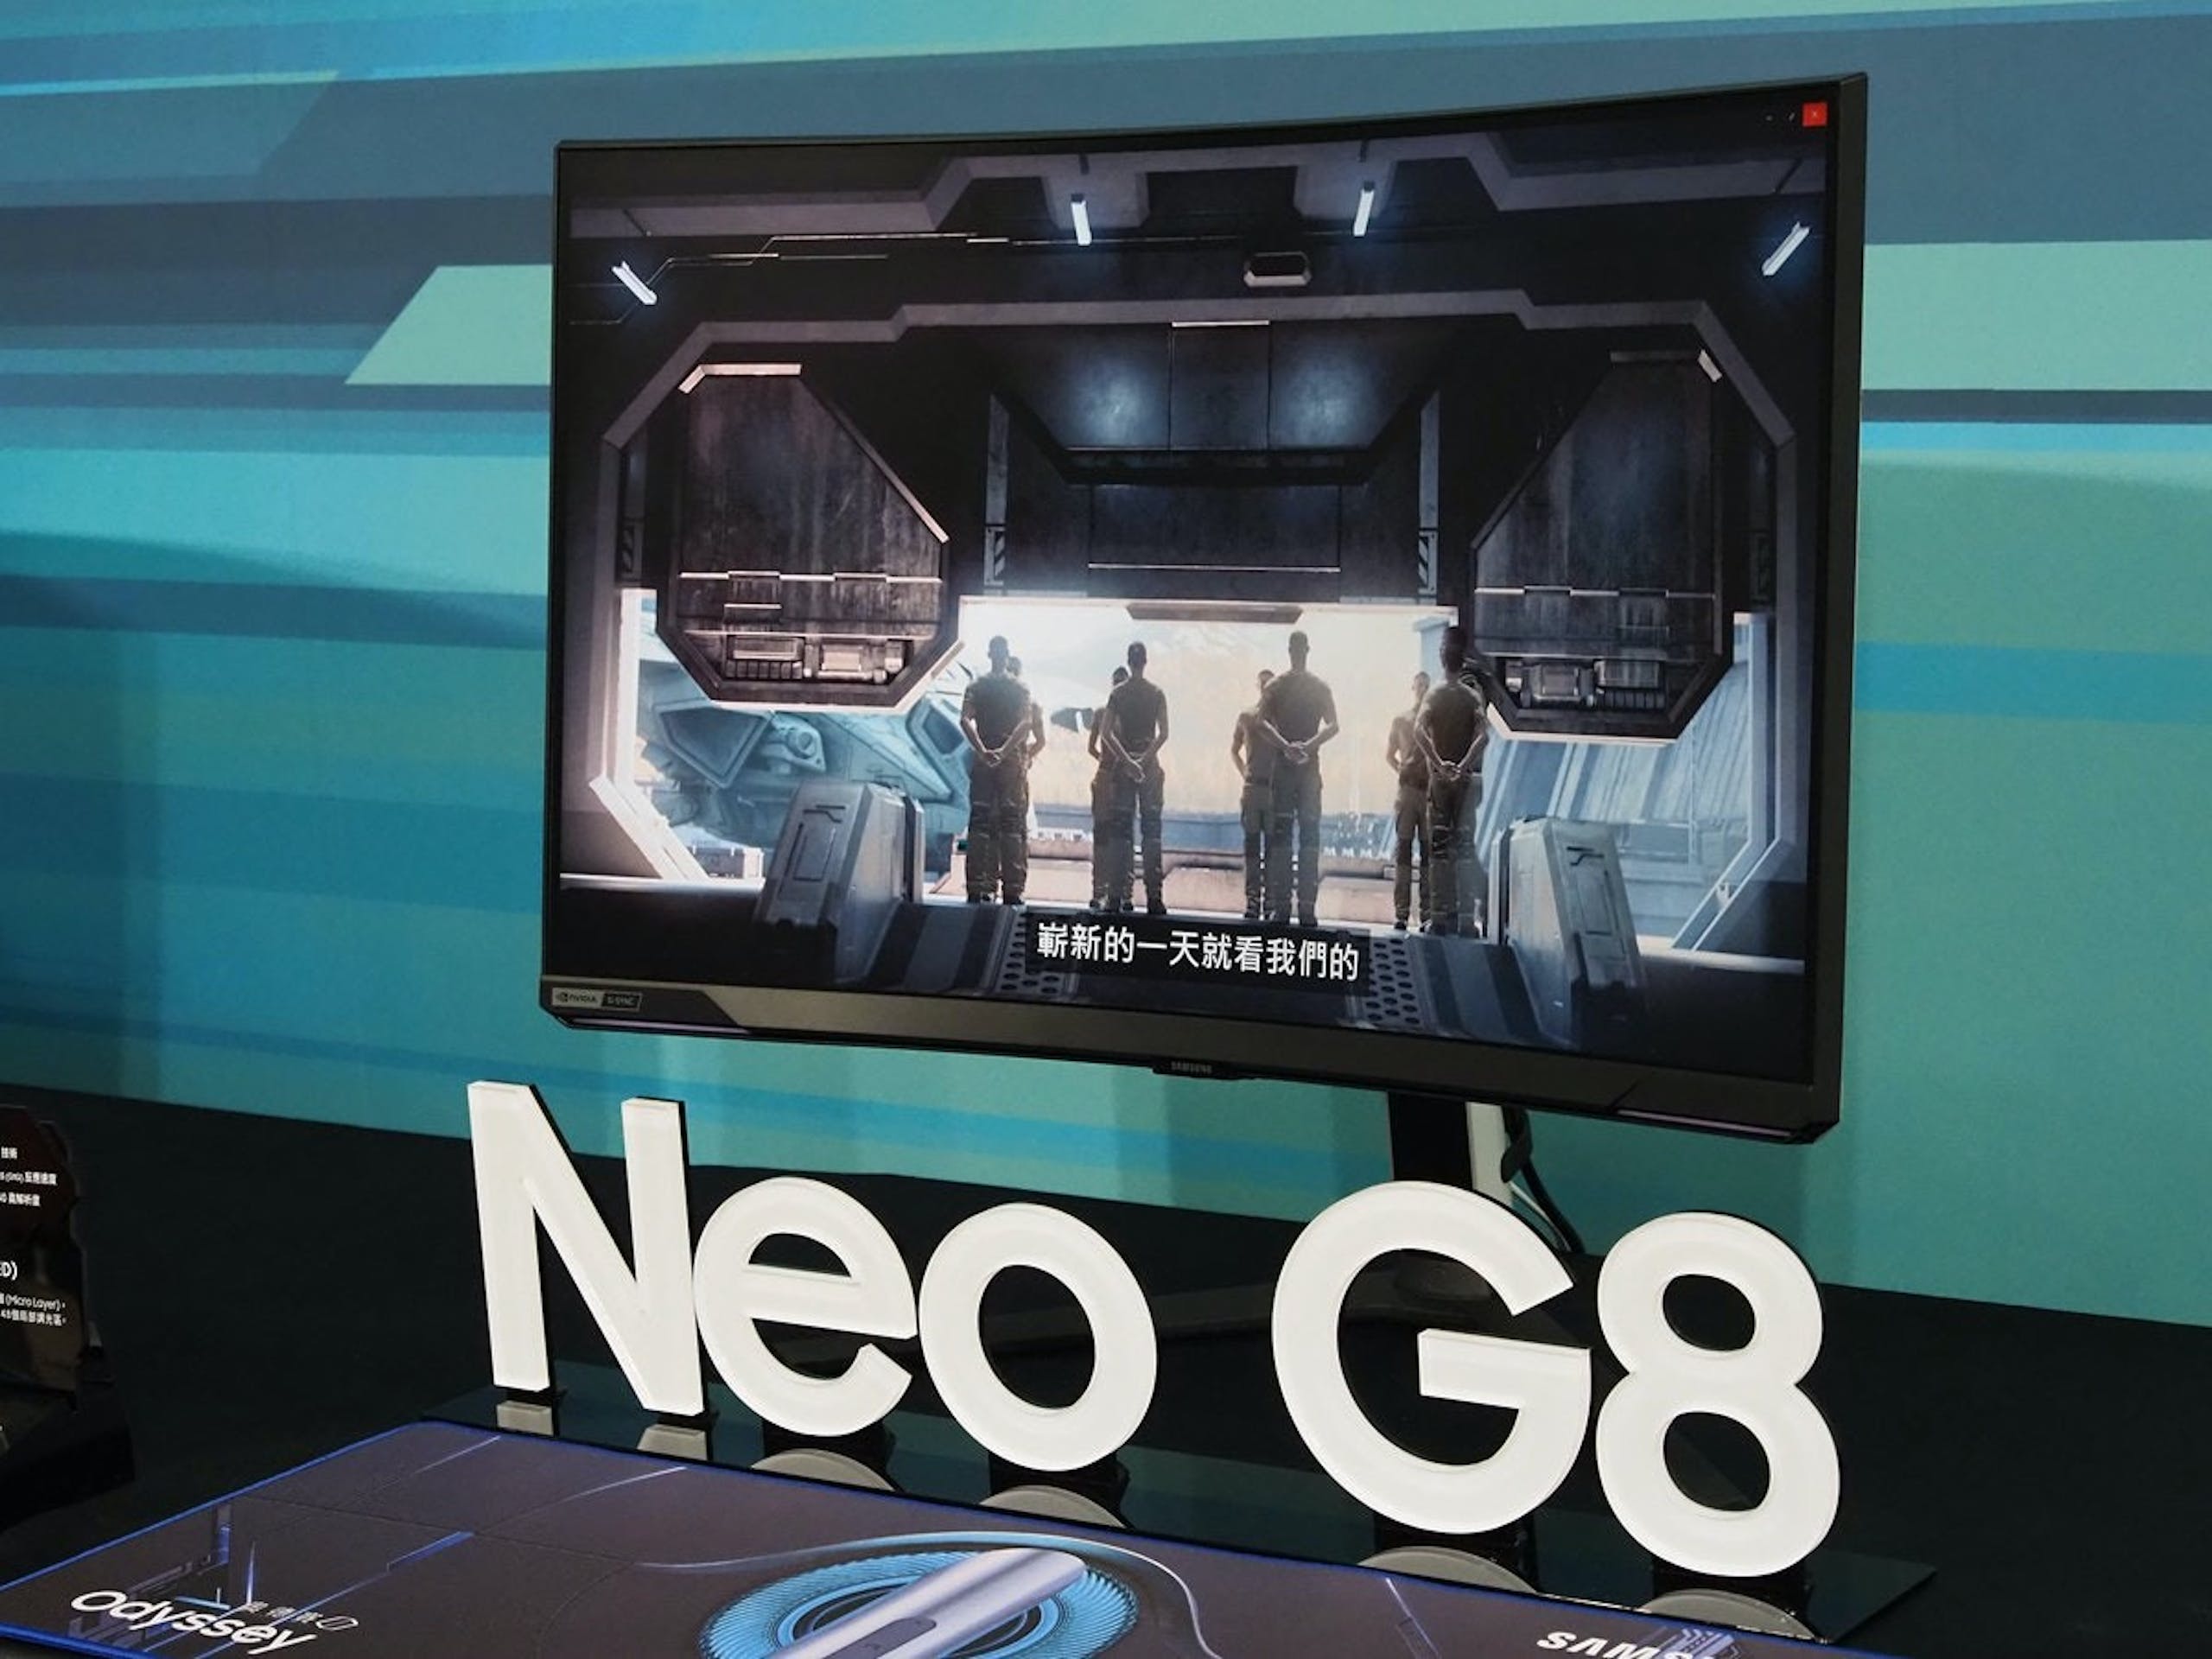 照片中提到了嶄新的一天就看我們的、Neo G8、SAN，包含了顯示裝置、三星奧德賽 Neo G9、三星、曲面屏、電腦顯示器